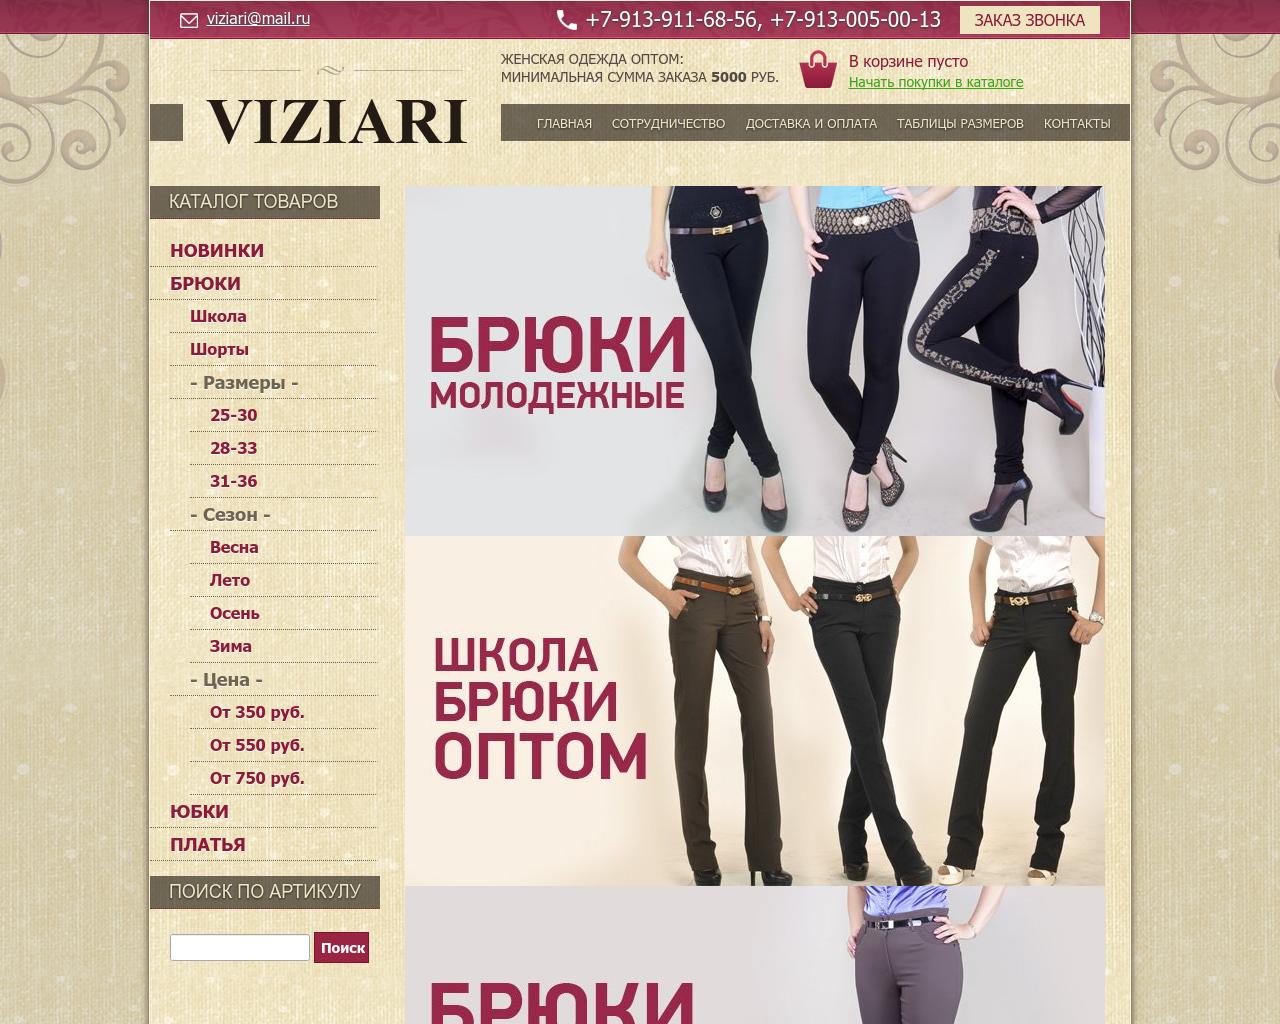 Изображение сайта viziari.ru в разрешении 1280x1024